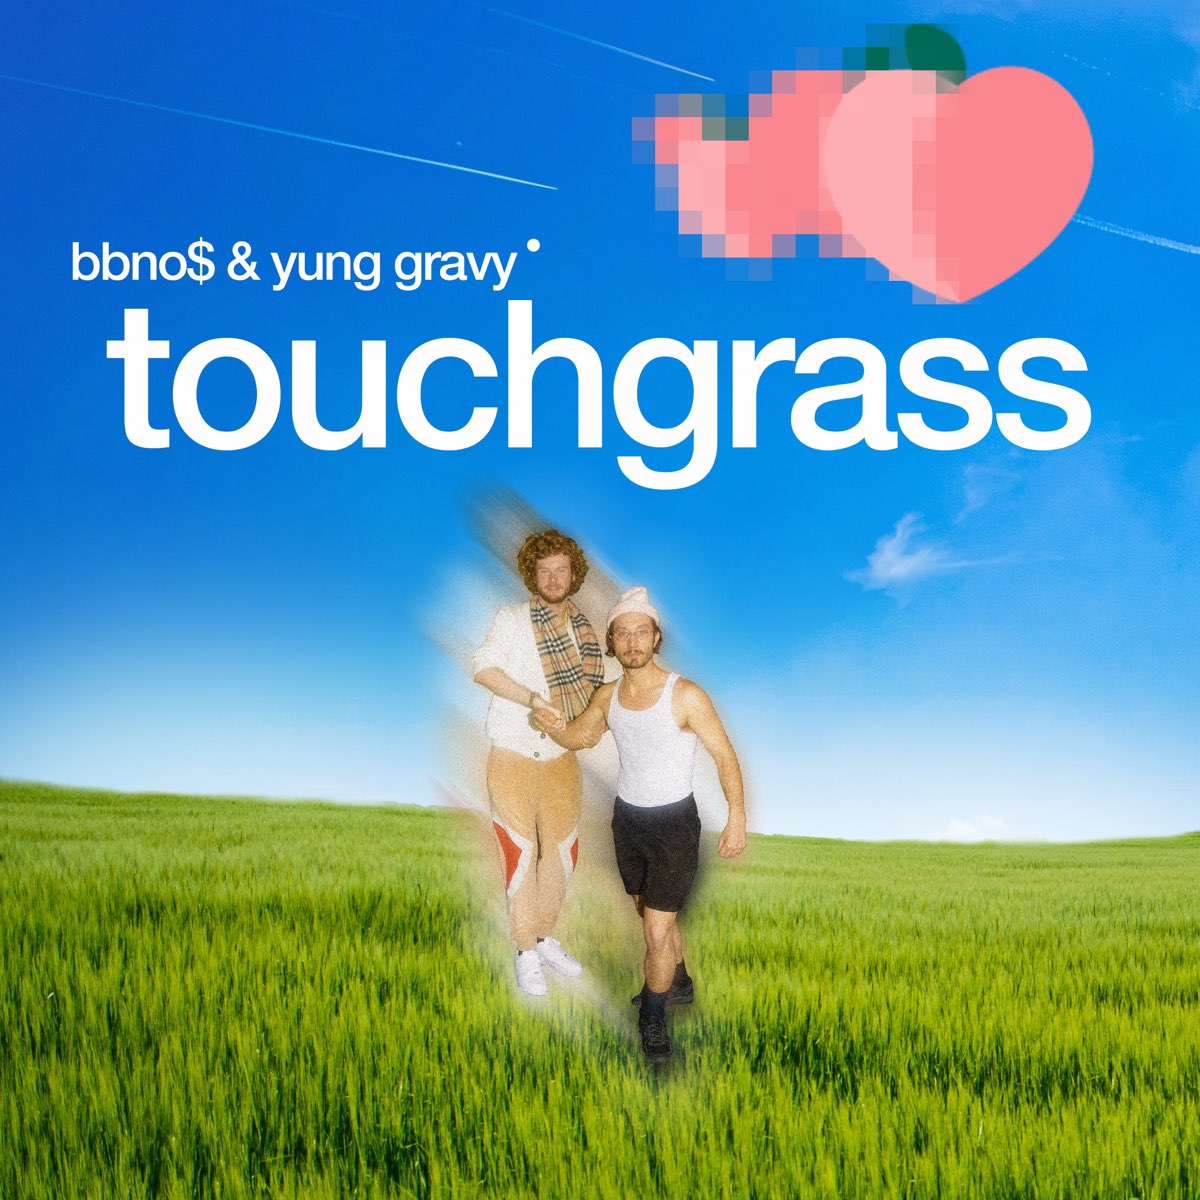 bbno$ - touch grass (Lyrics) ft. Yung Gravy 